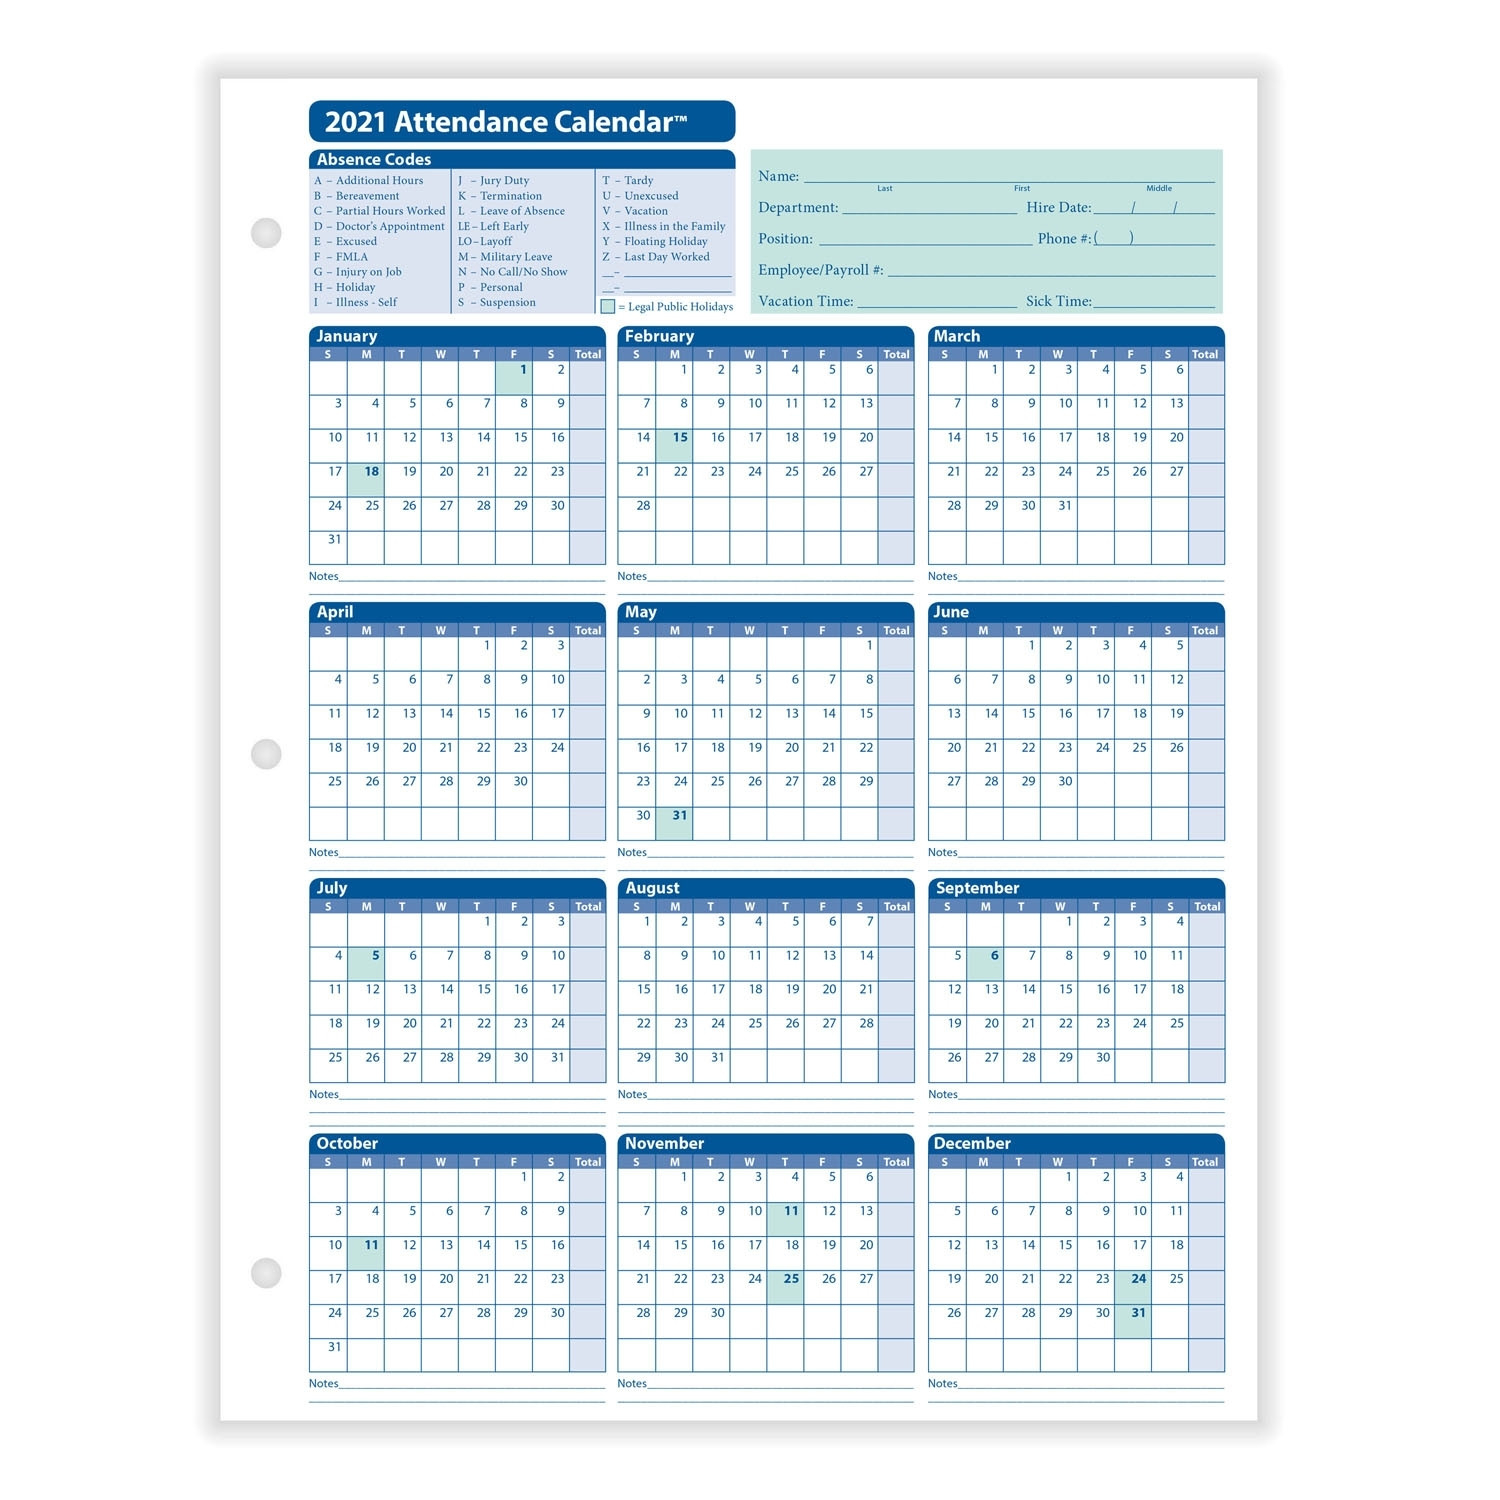 Get 2021 Employee Attendance Calendar - Best Calendar Example-2021 Attendance Calendar For Employees